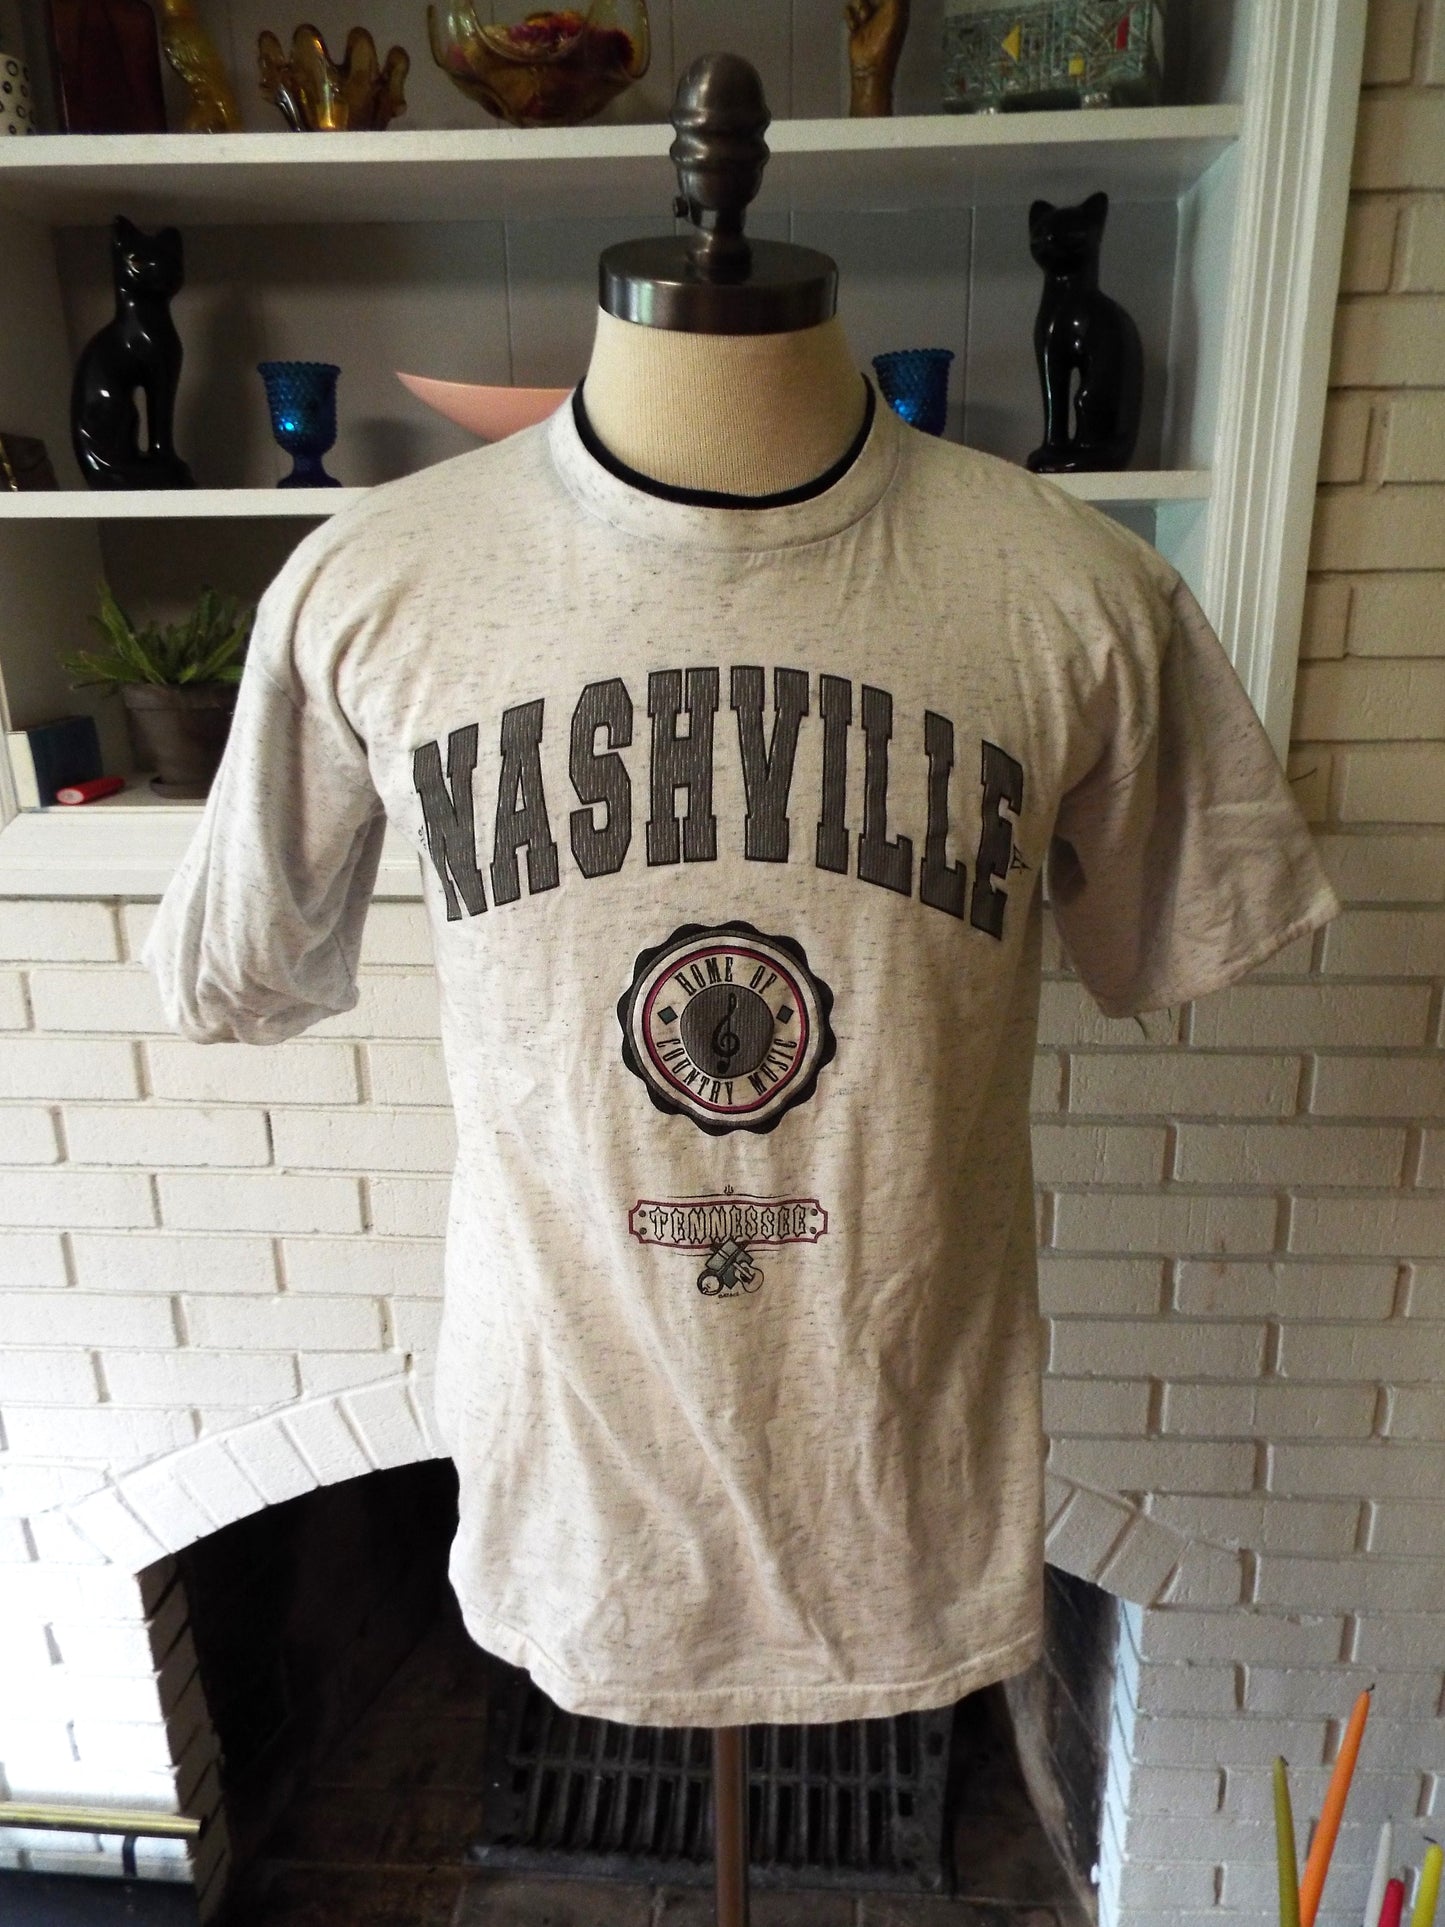 Vintage Nashville T-Shirt by Belton